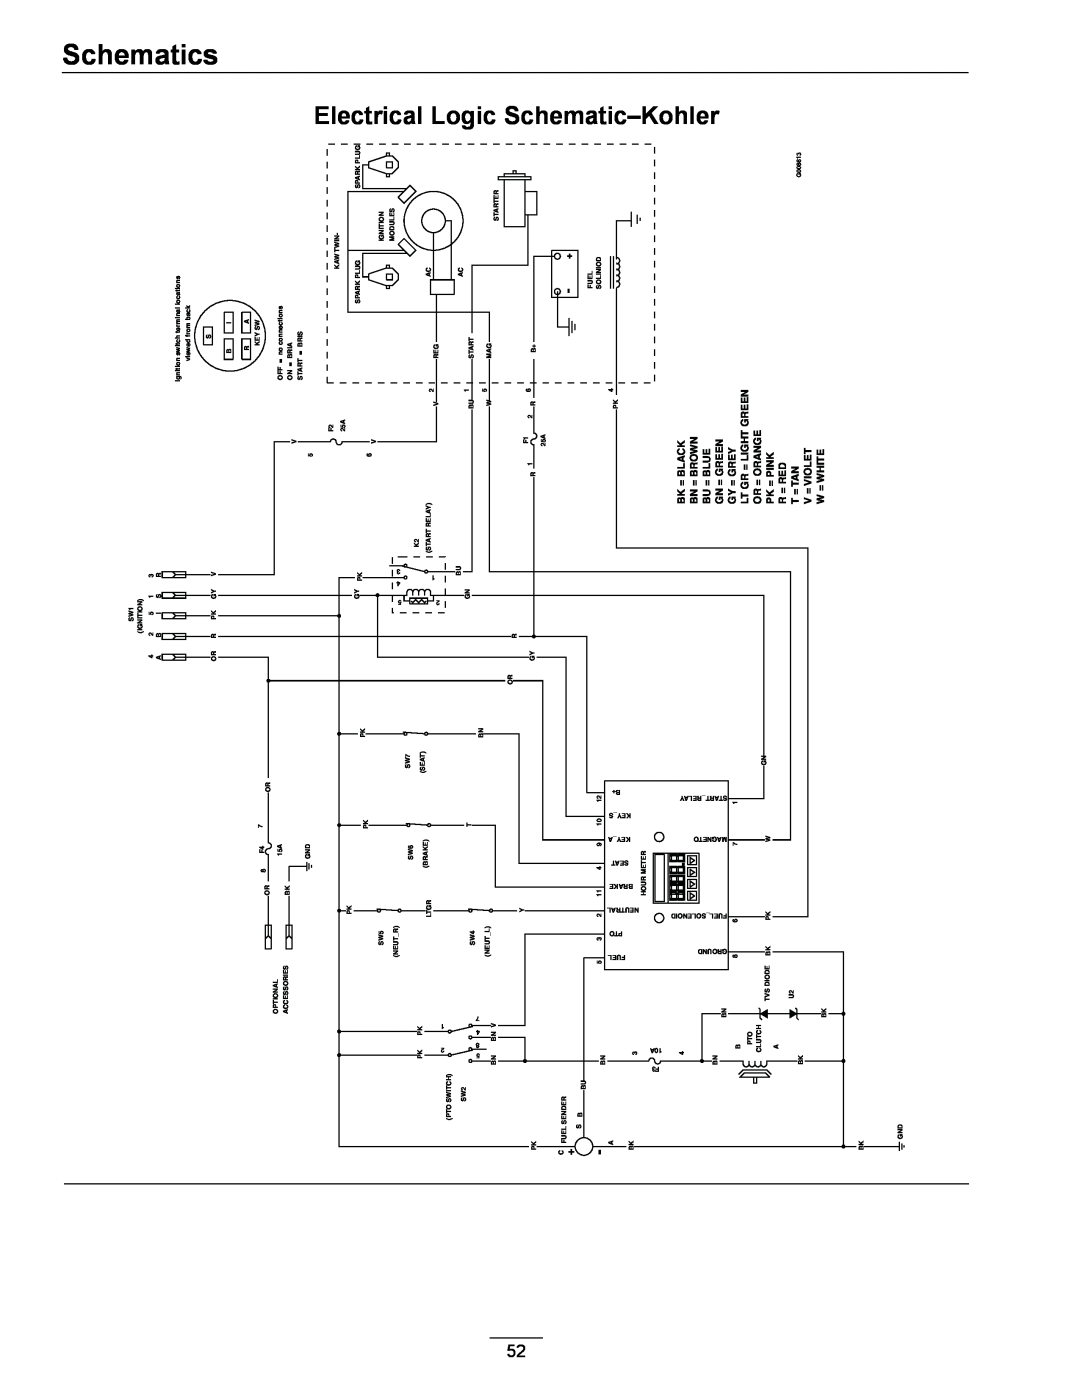 Exmark 312, 000 & higher manual Schematics, Electrical Logic Schematic-Kohler 